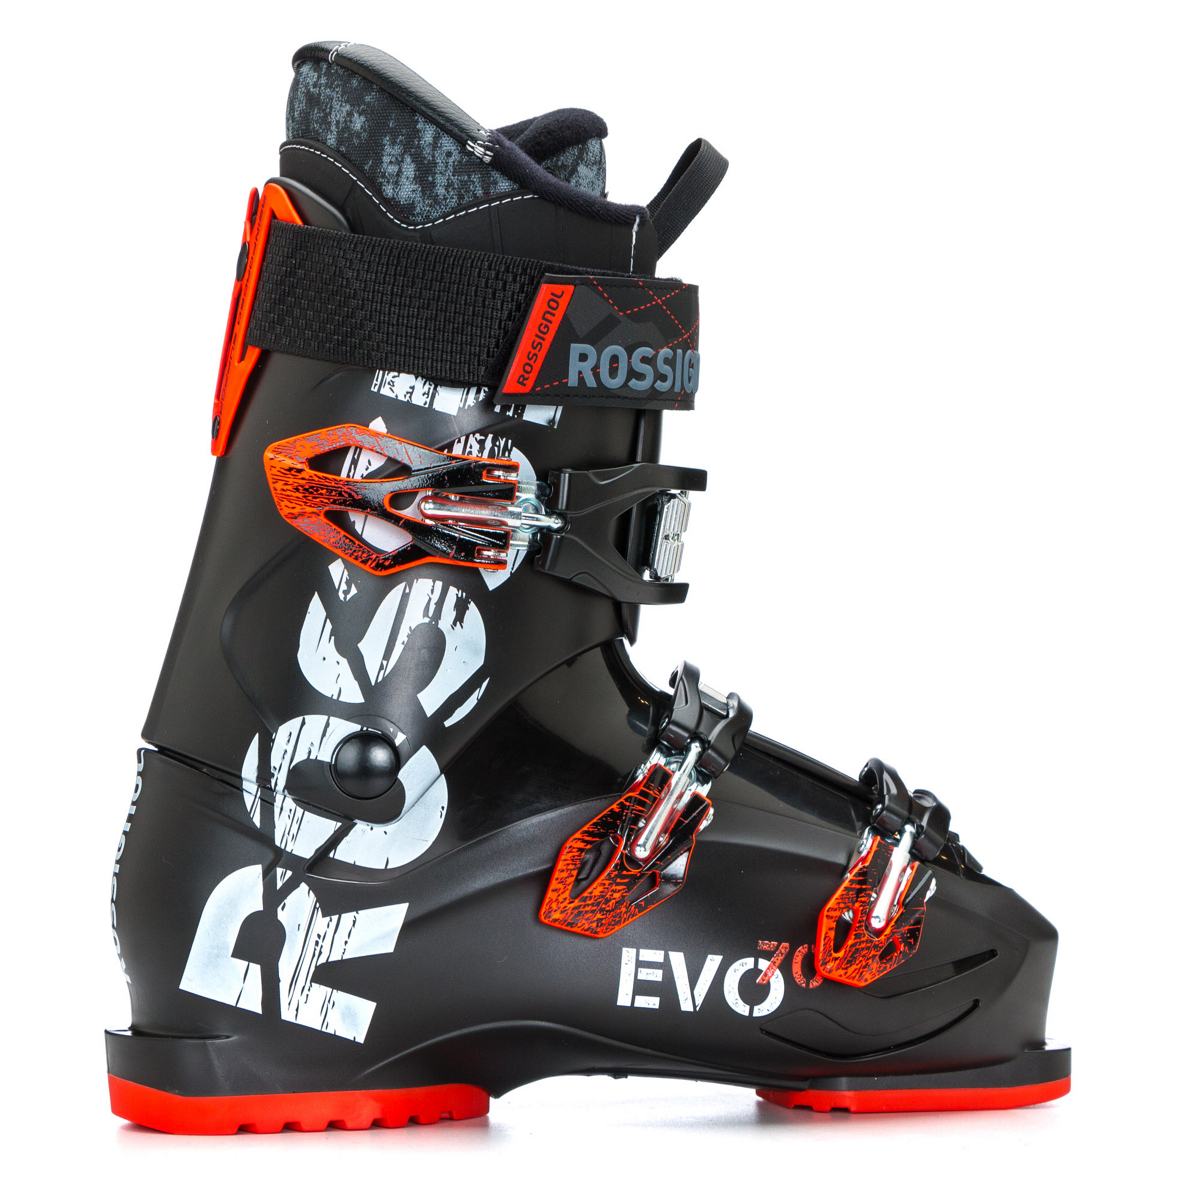 Rossignol Evo 70 Ski Boots